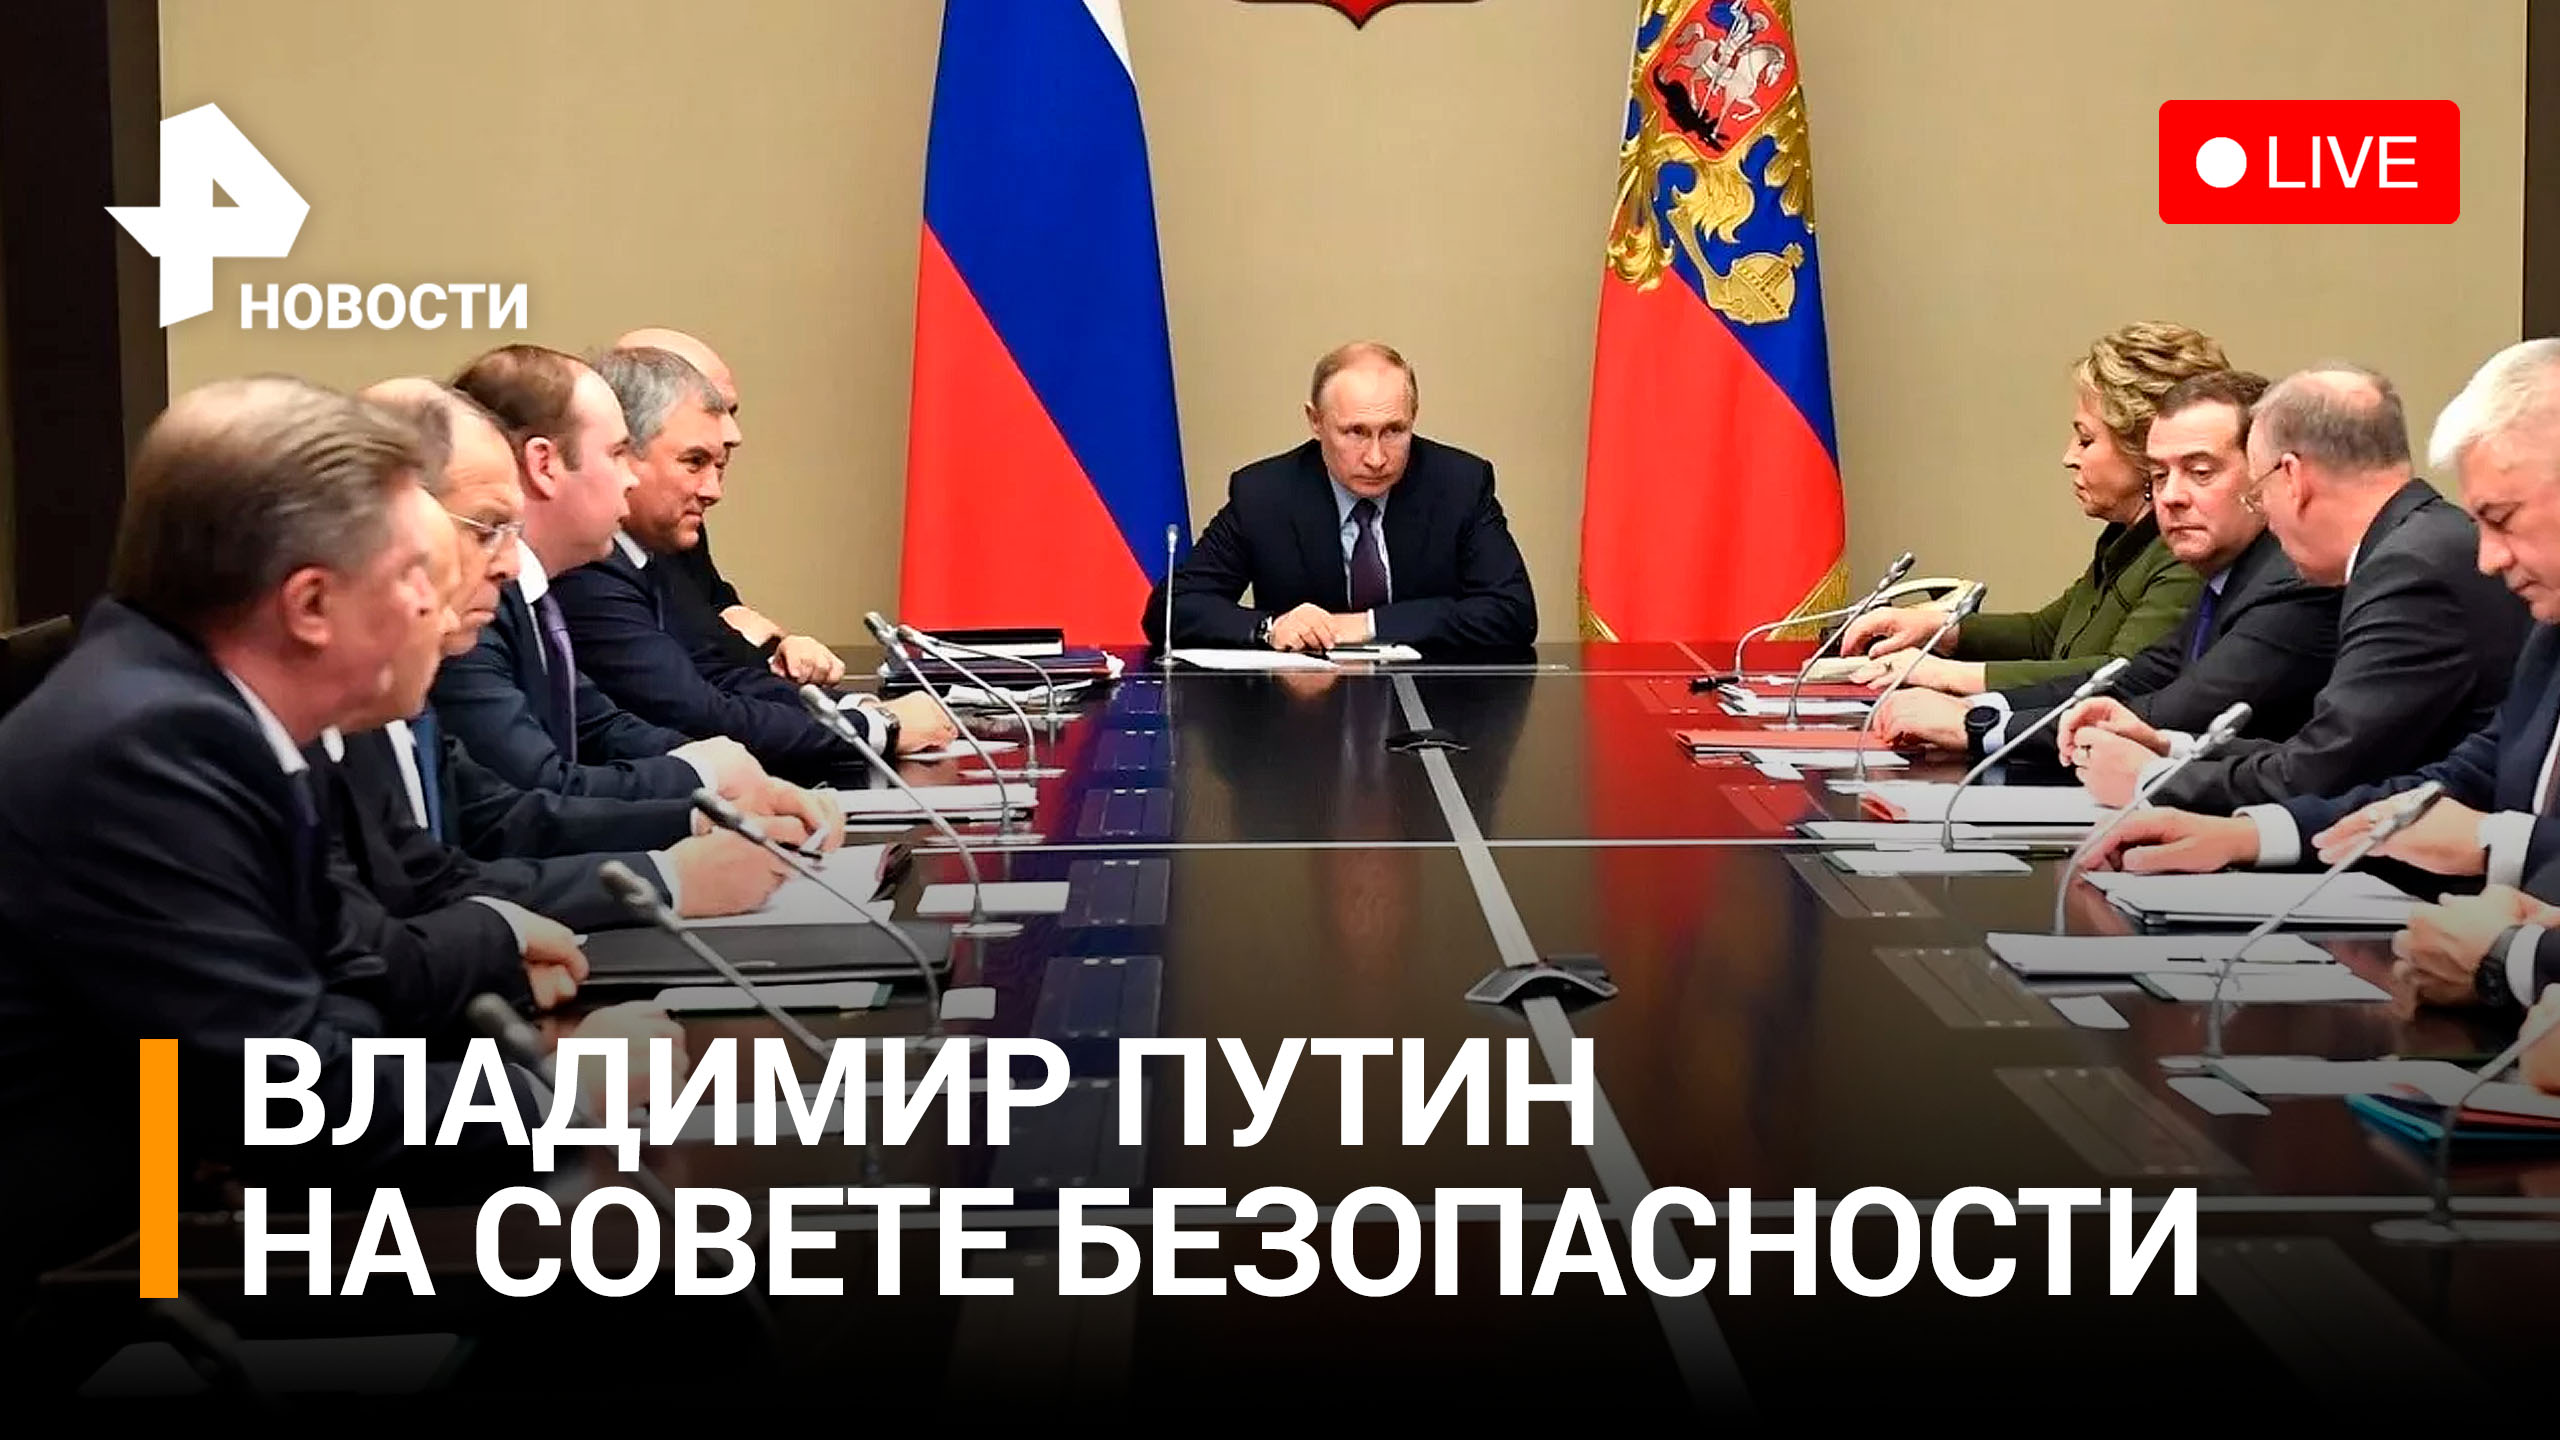 Владимир Путин на оперативном совещании Совета Безопасности. Прямая трансляция